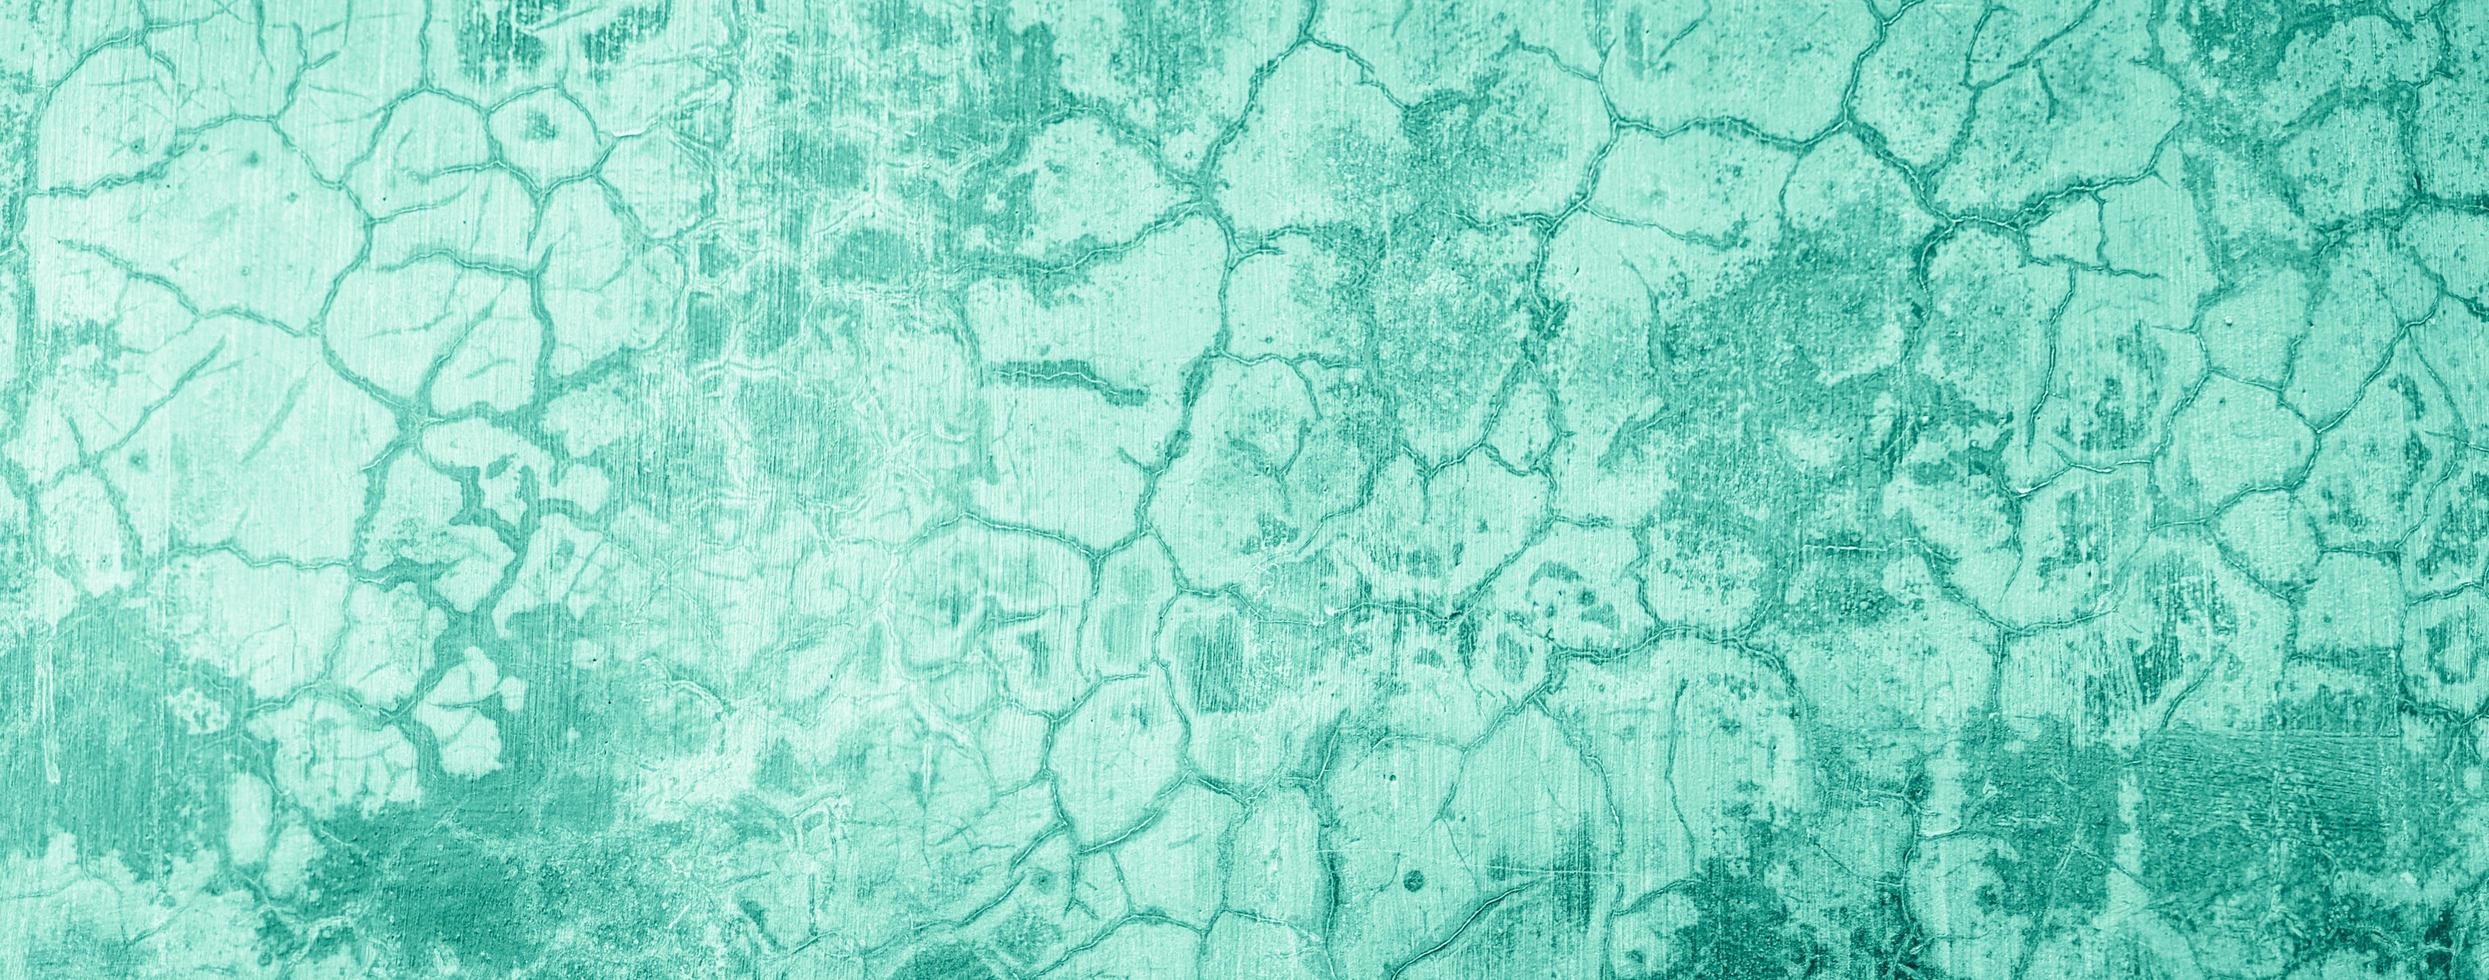 fundo de textura de parede de concreto de cimento abstrato cor azul pastel foto